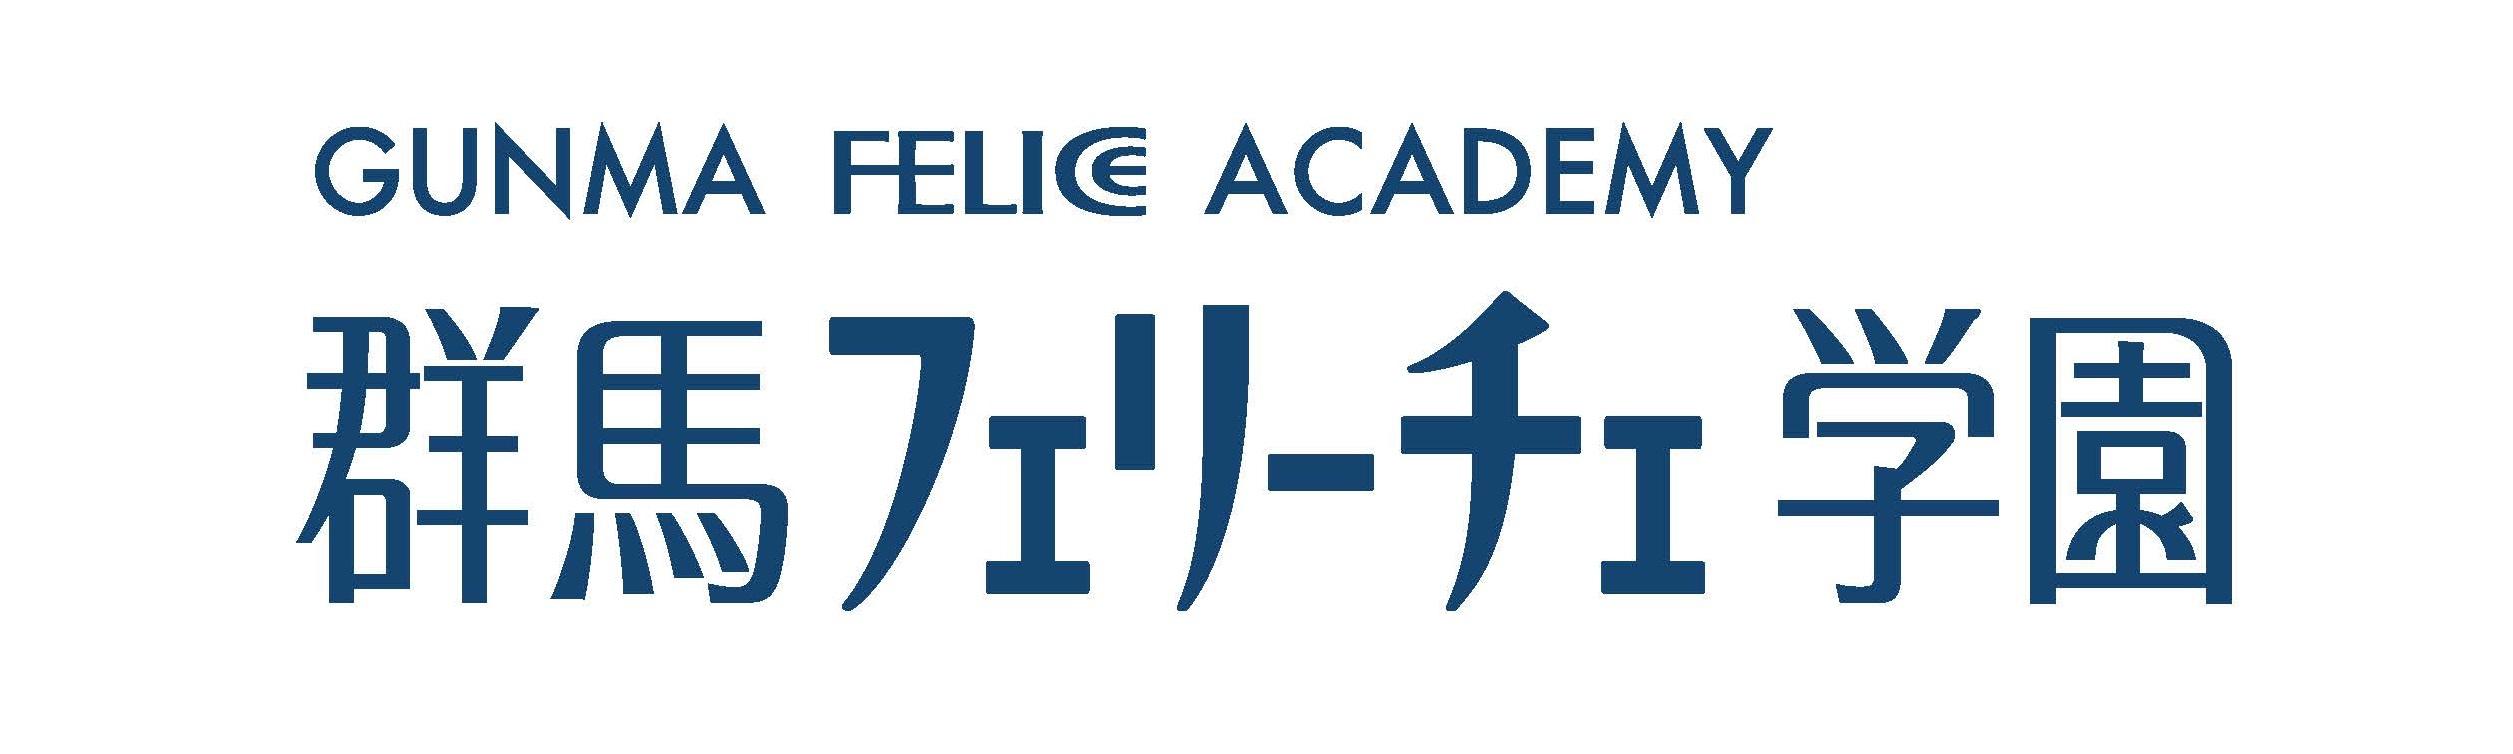 Gunma Felice Academy image